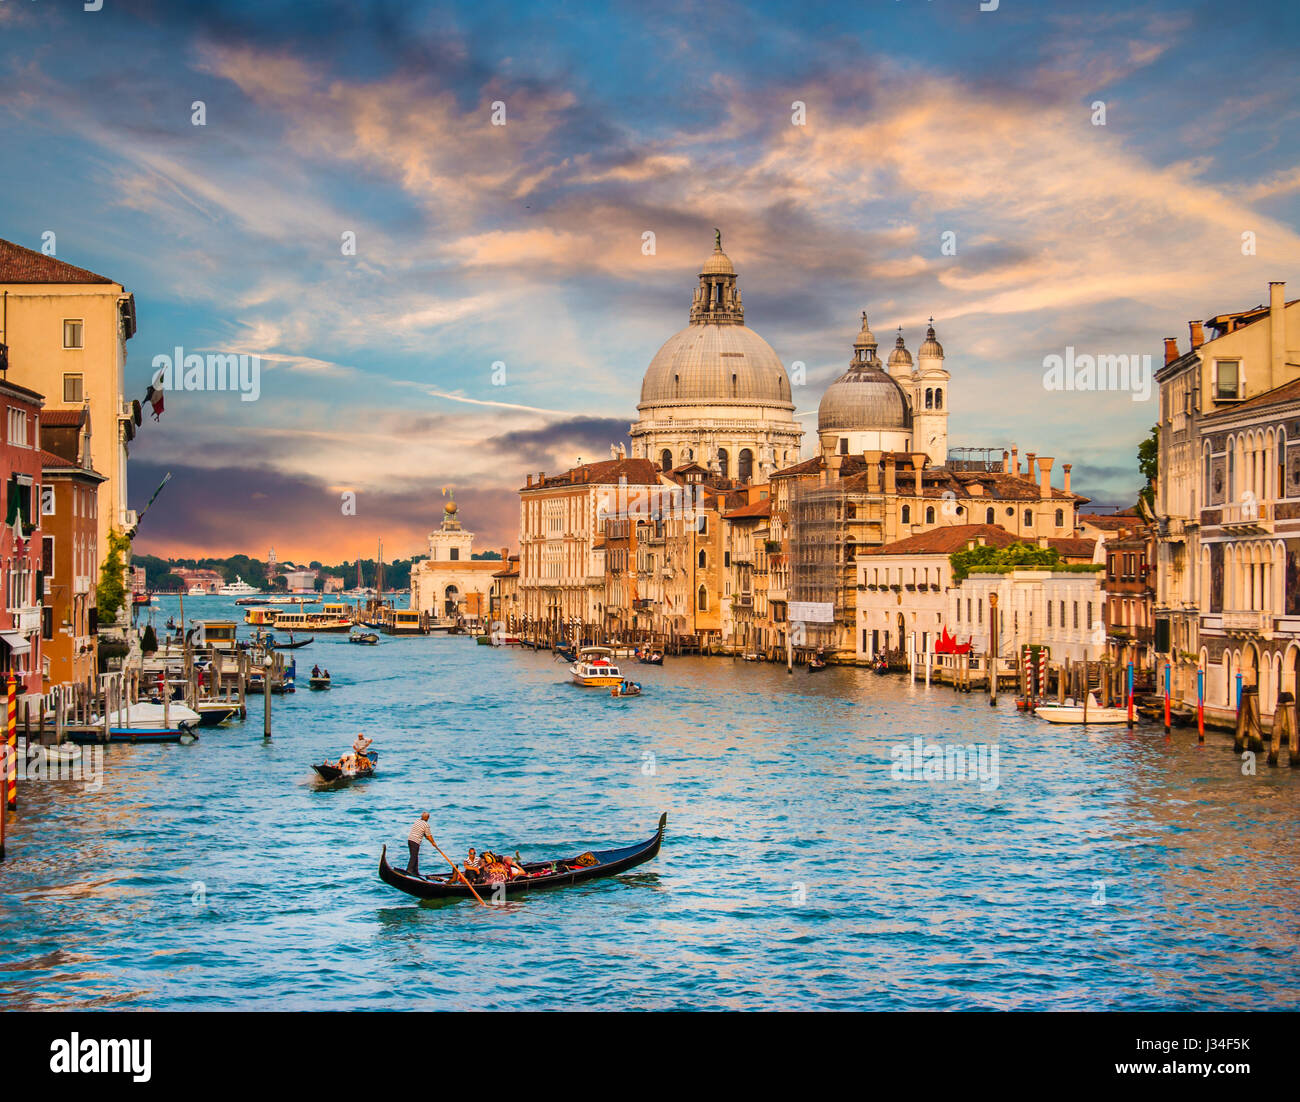 Gondole traditionnelle sur Canal Grande avec la Basilique Santa Maria della Salute au coucher du soleil, Venise, Italie Banque D'Images